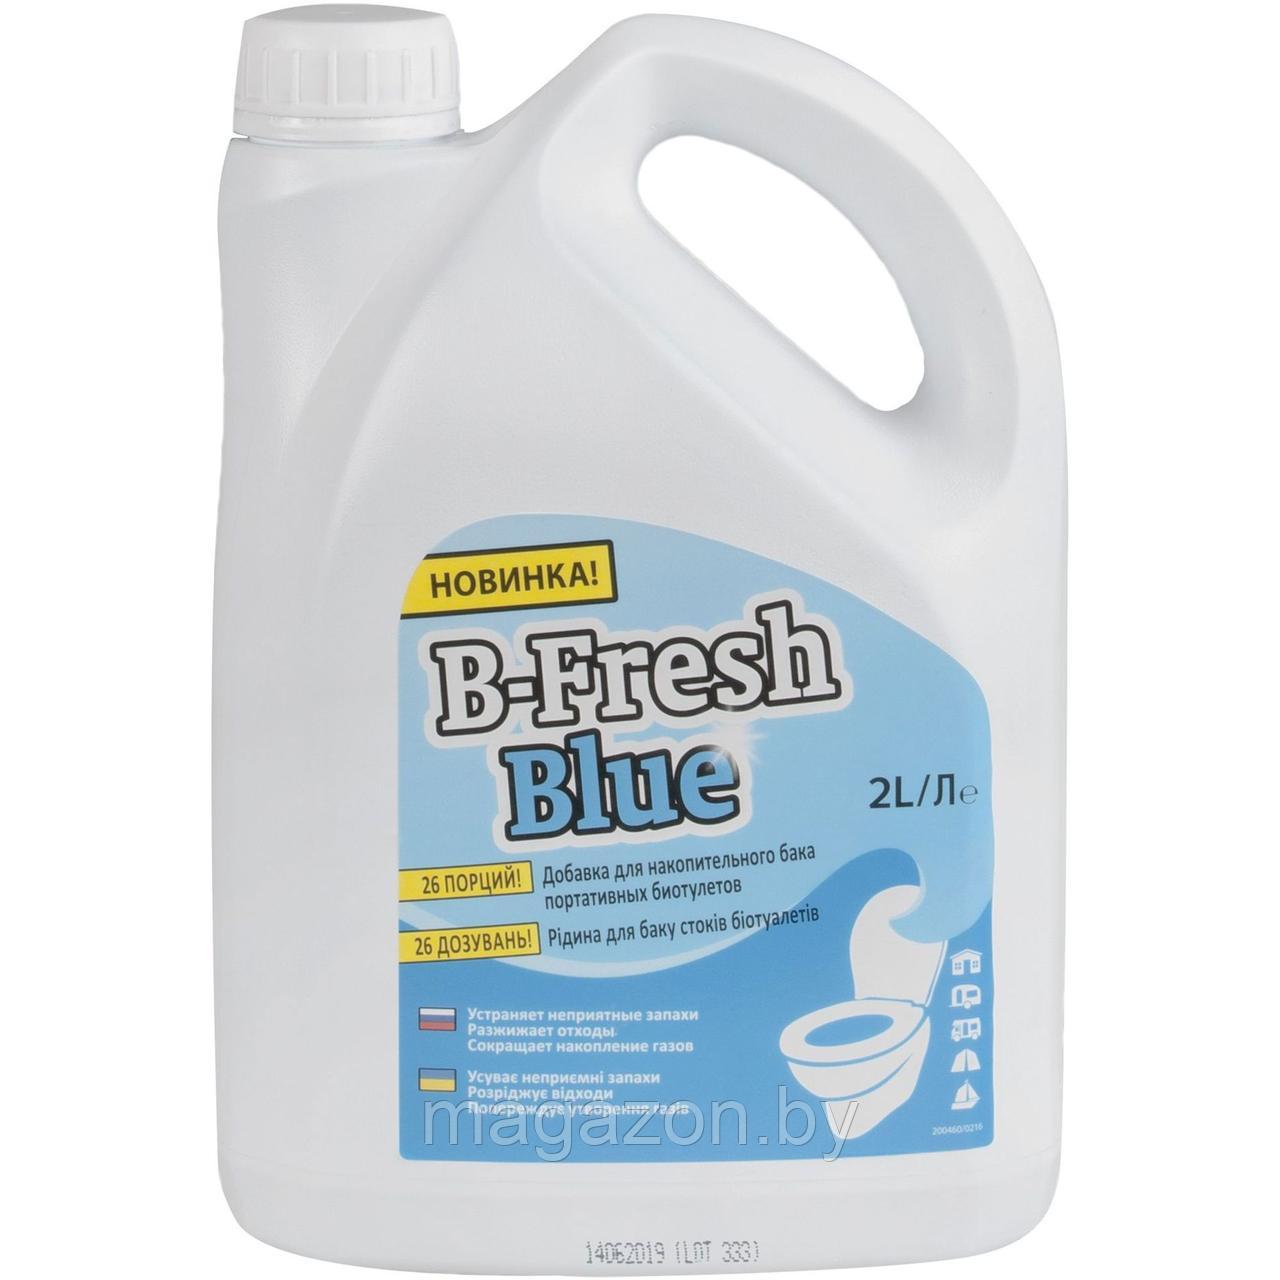 Жидкость для биотуалета Thetford B-Fresh Blue (Би-Фреш Блю) 2л .